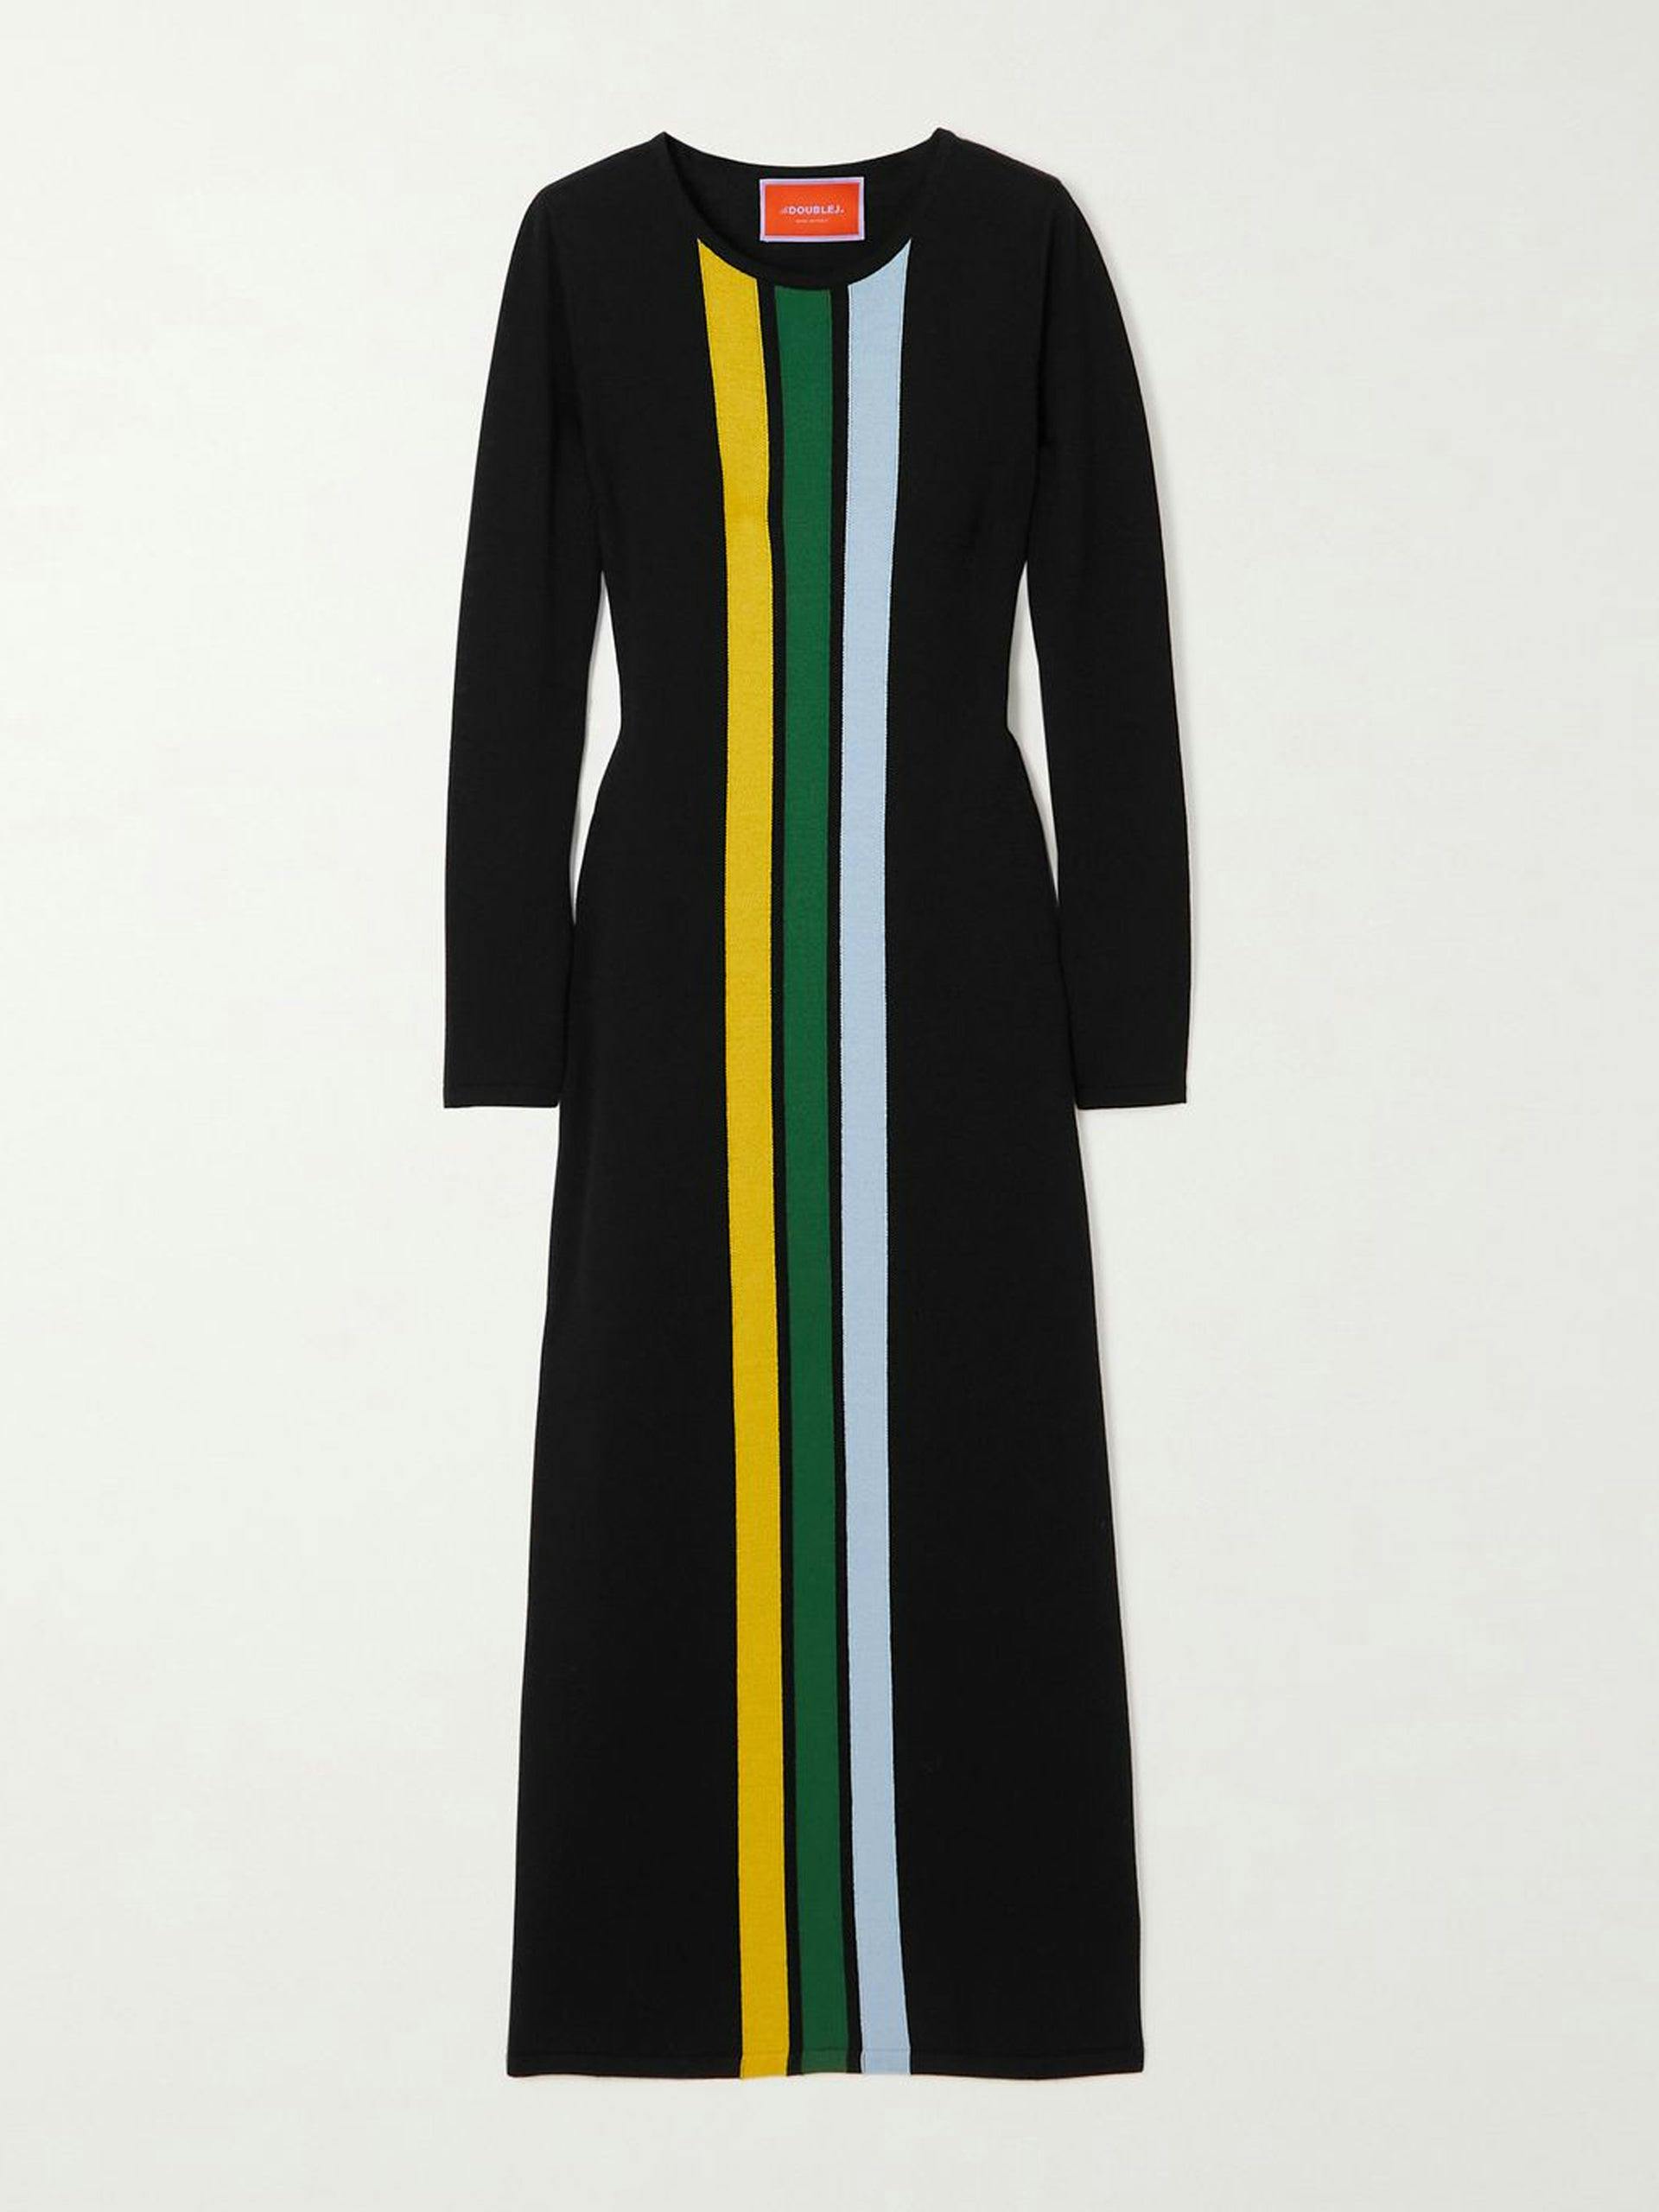 Black wool maxi dress